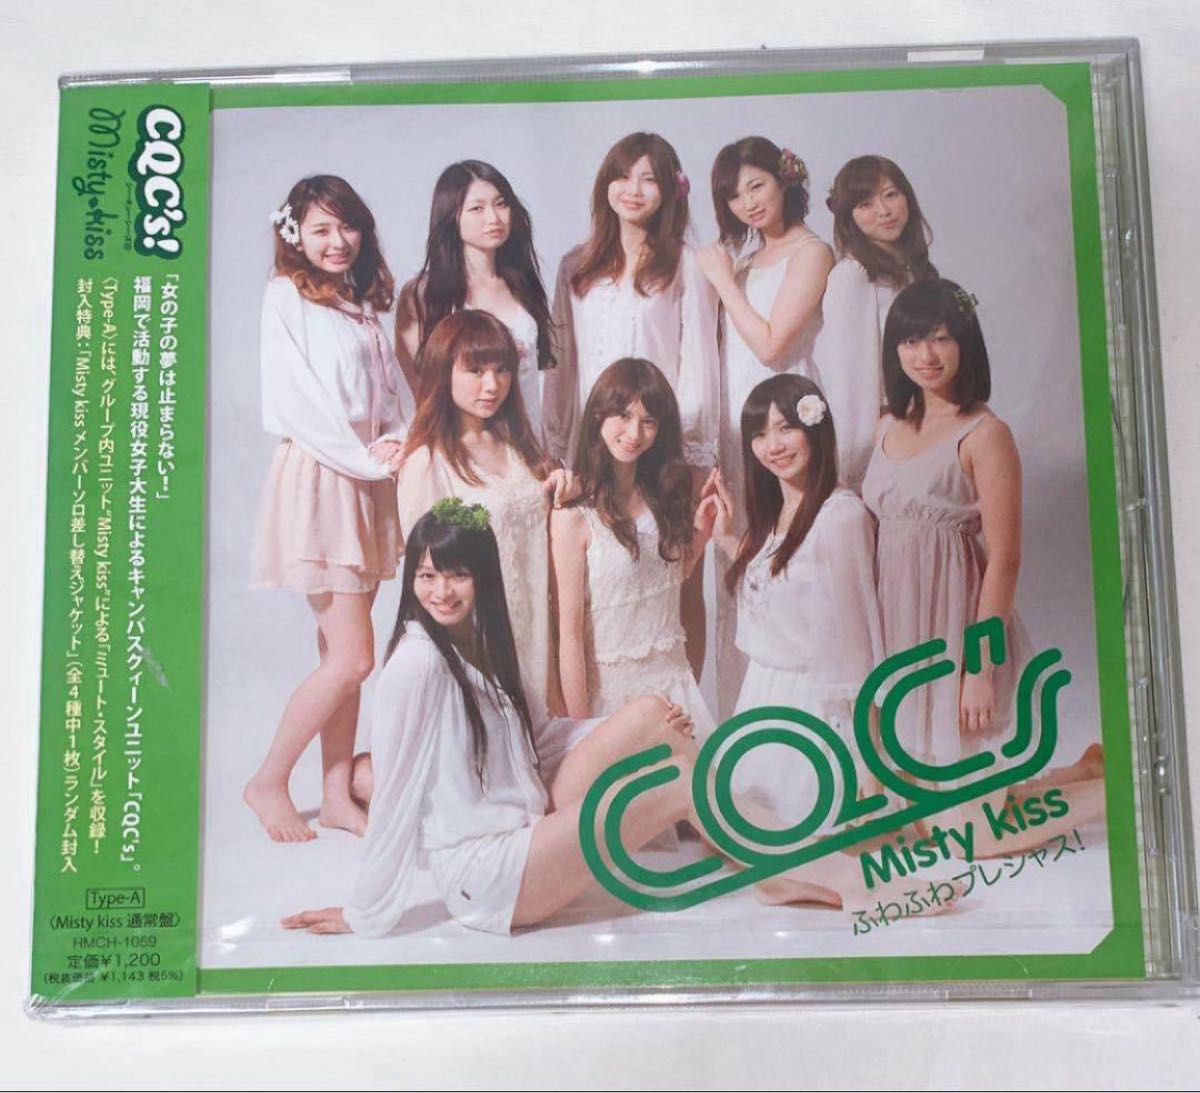 ふわふわプレシャス！ 【Type-A / Misty kiss 通常盤】 CQC's CD